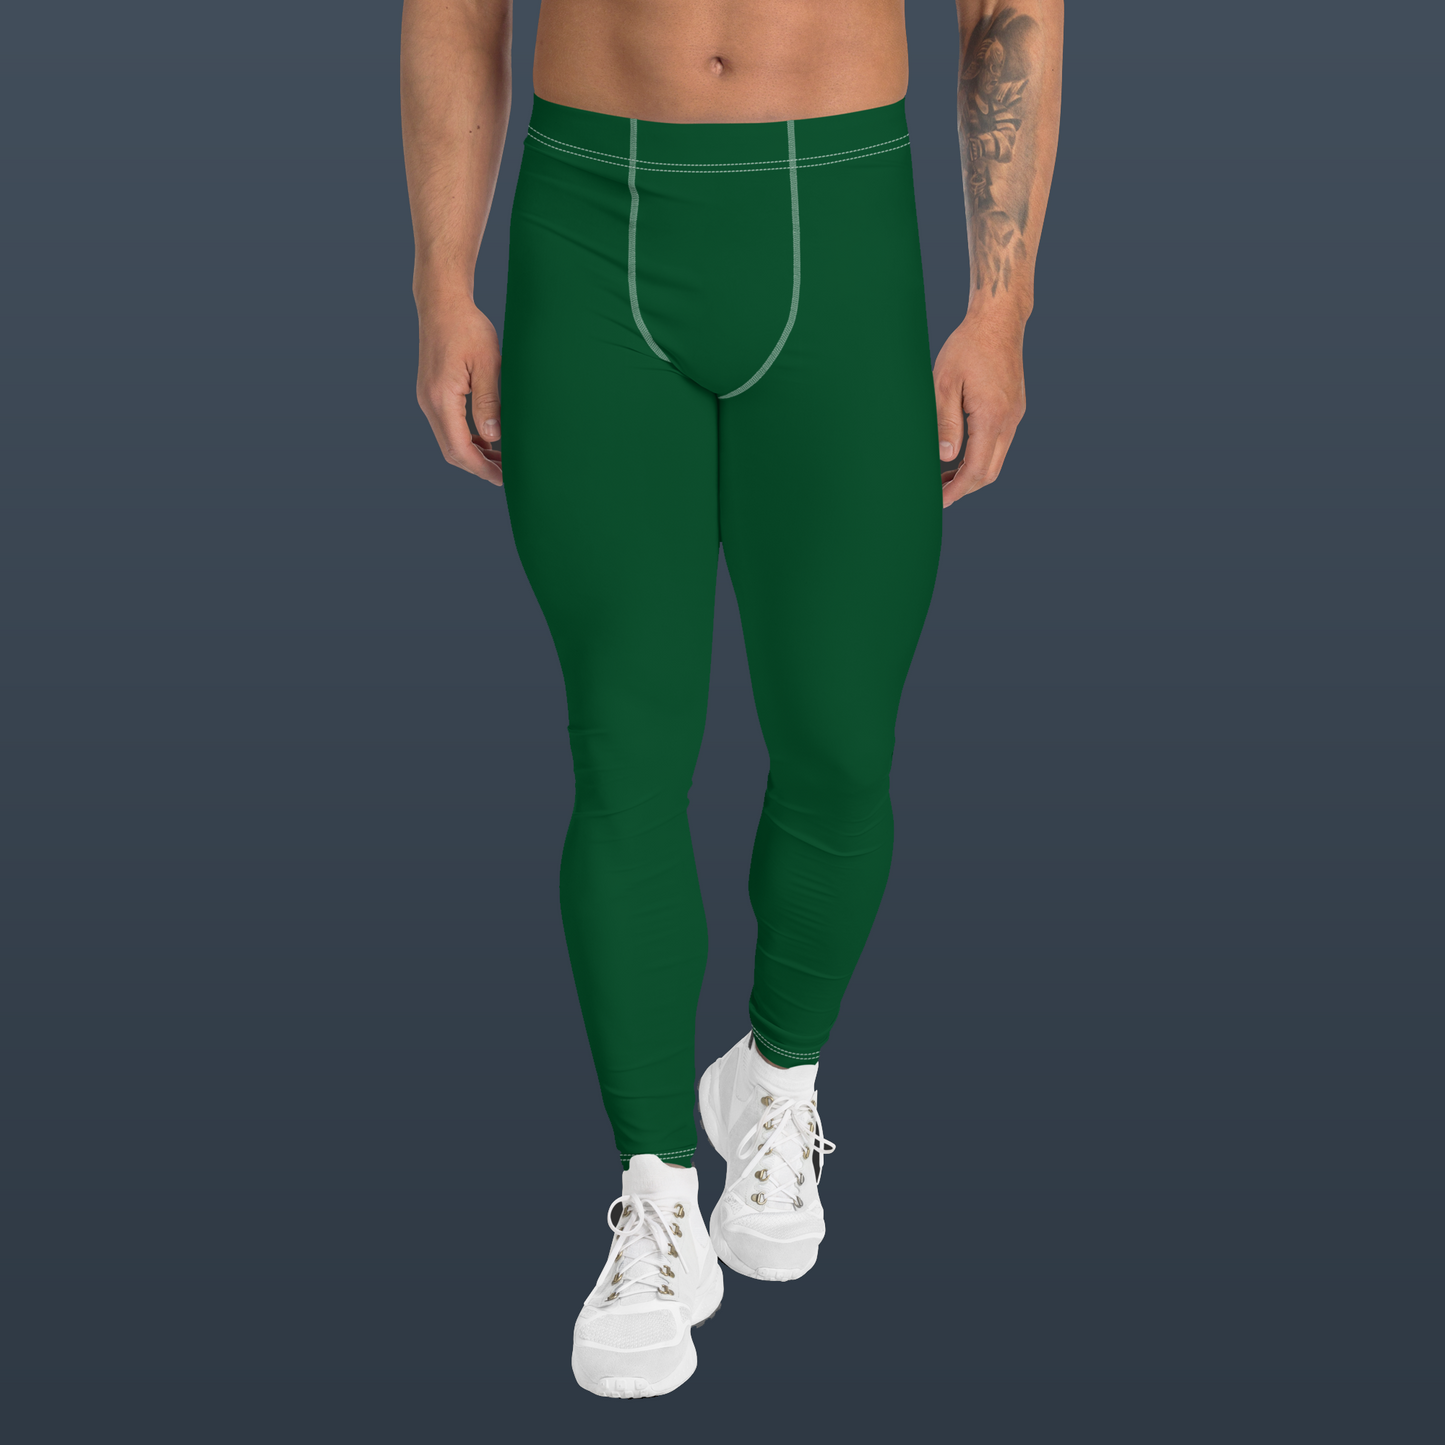 Men's Athletic Leggings (Green)